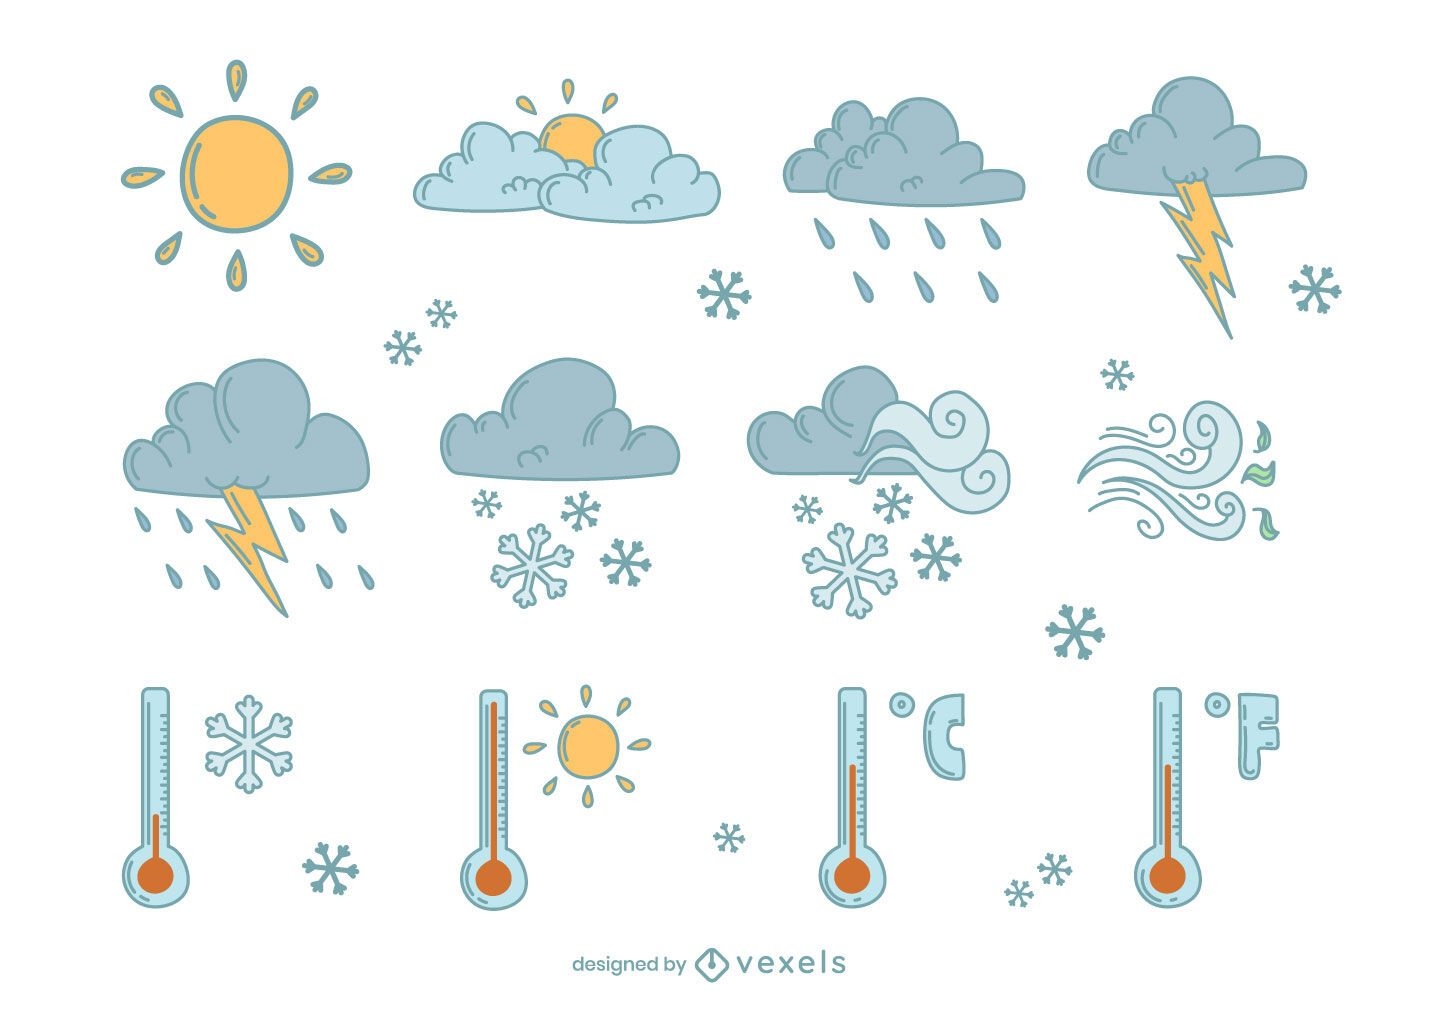 Weather elements doodle set